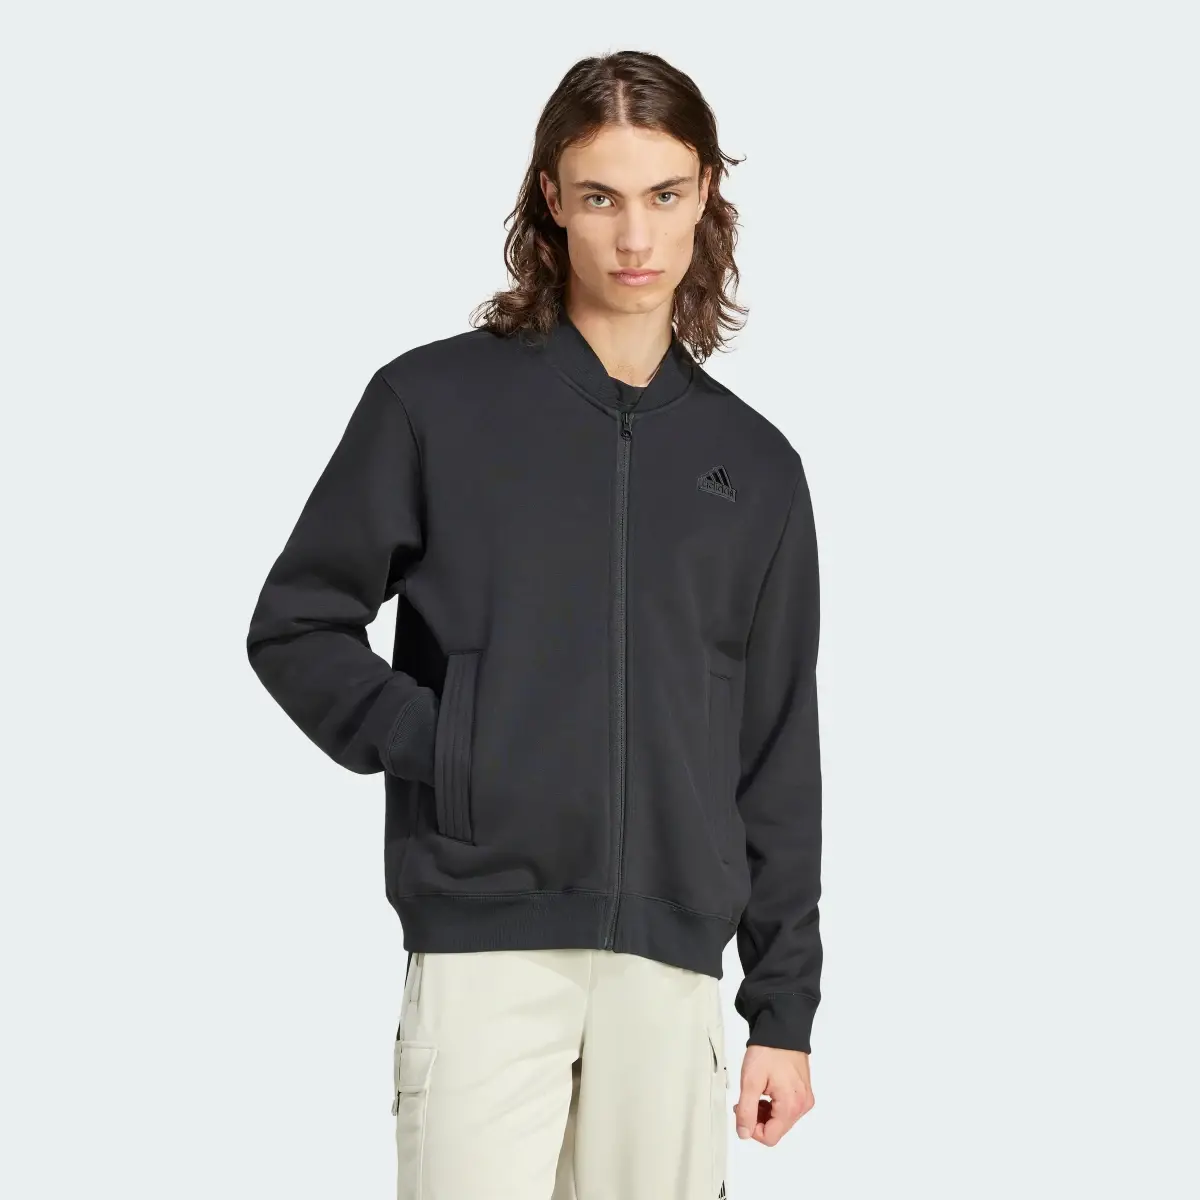 Adidas Lounge Fleece Bomber Jacket With Zip Opening. 2